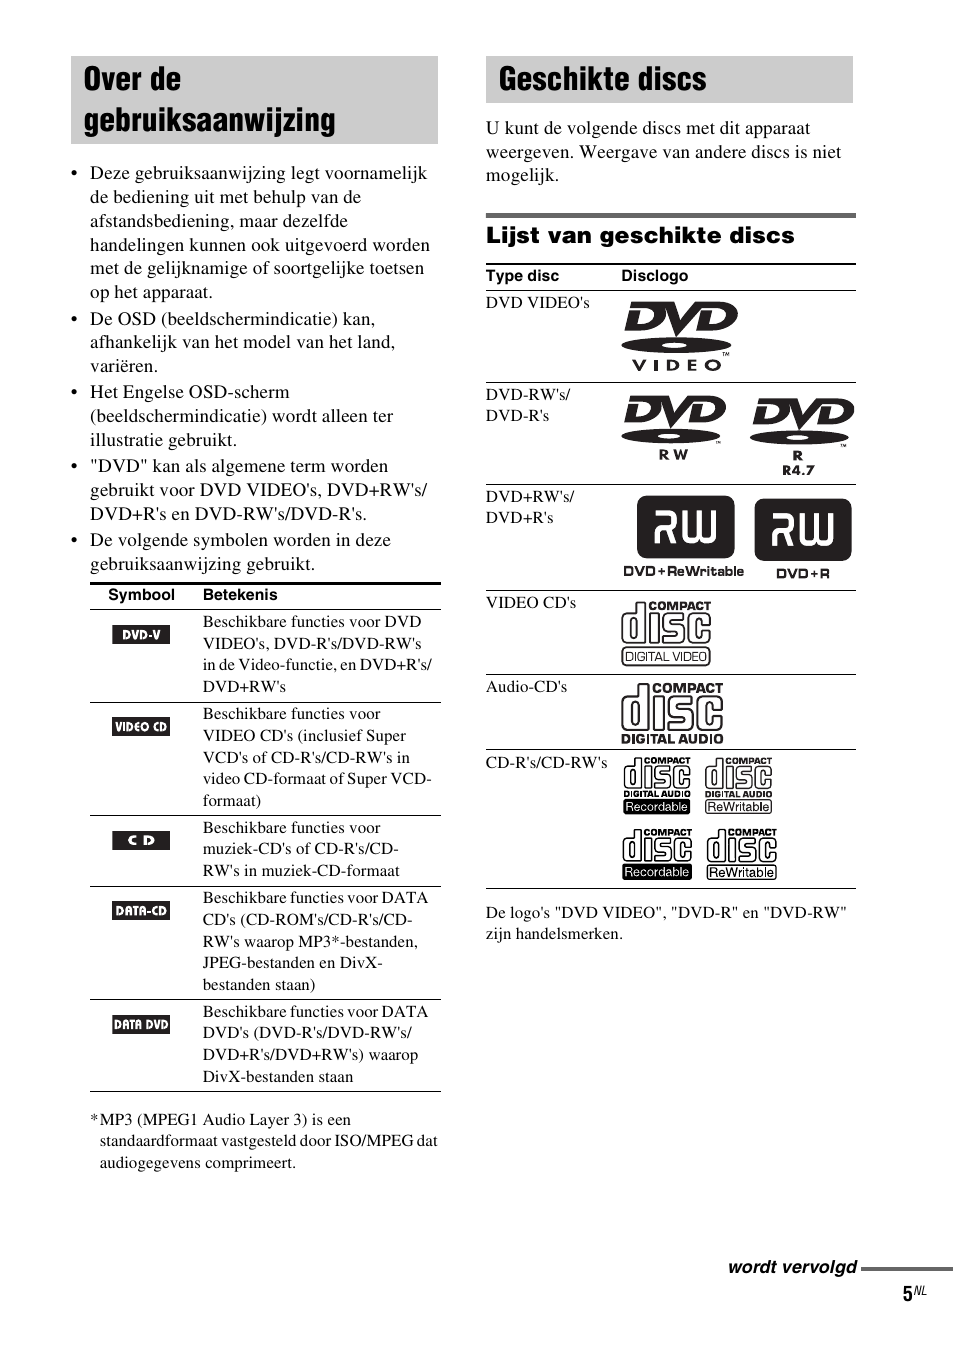 Over de gebruiksaanwijzing, Geschikte discs, Over de gebruiksaanwijzing geschikte discs | Lijst van geschikte discs | Sony CMT-DF1 Benutzerhandbuch | Seite 59 / 112